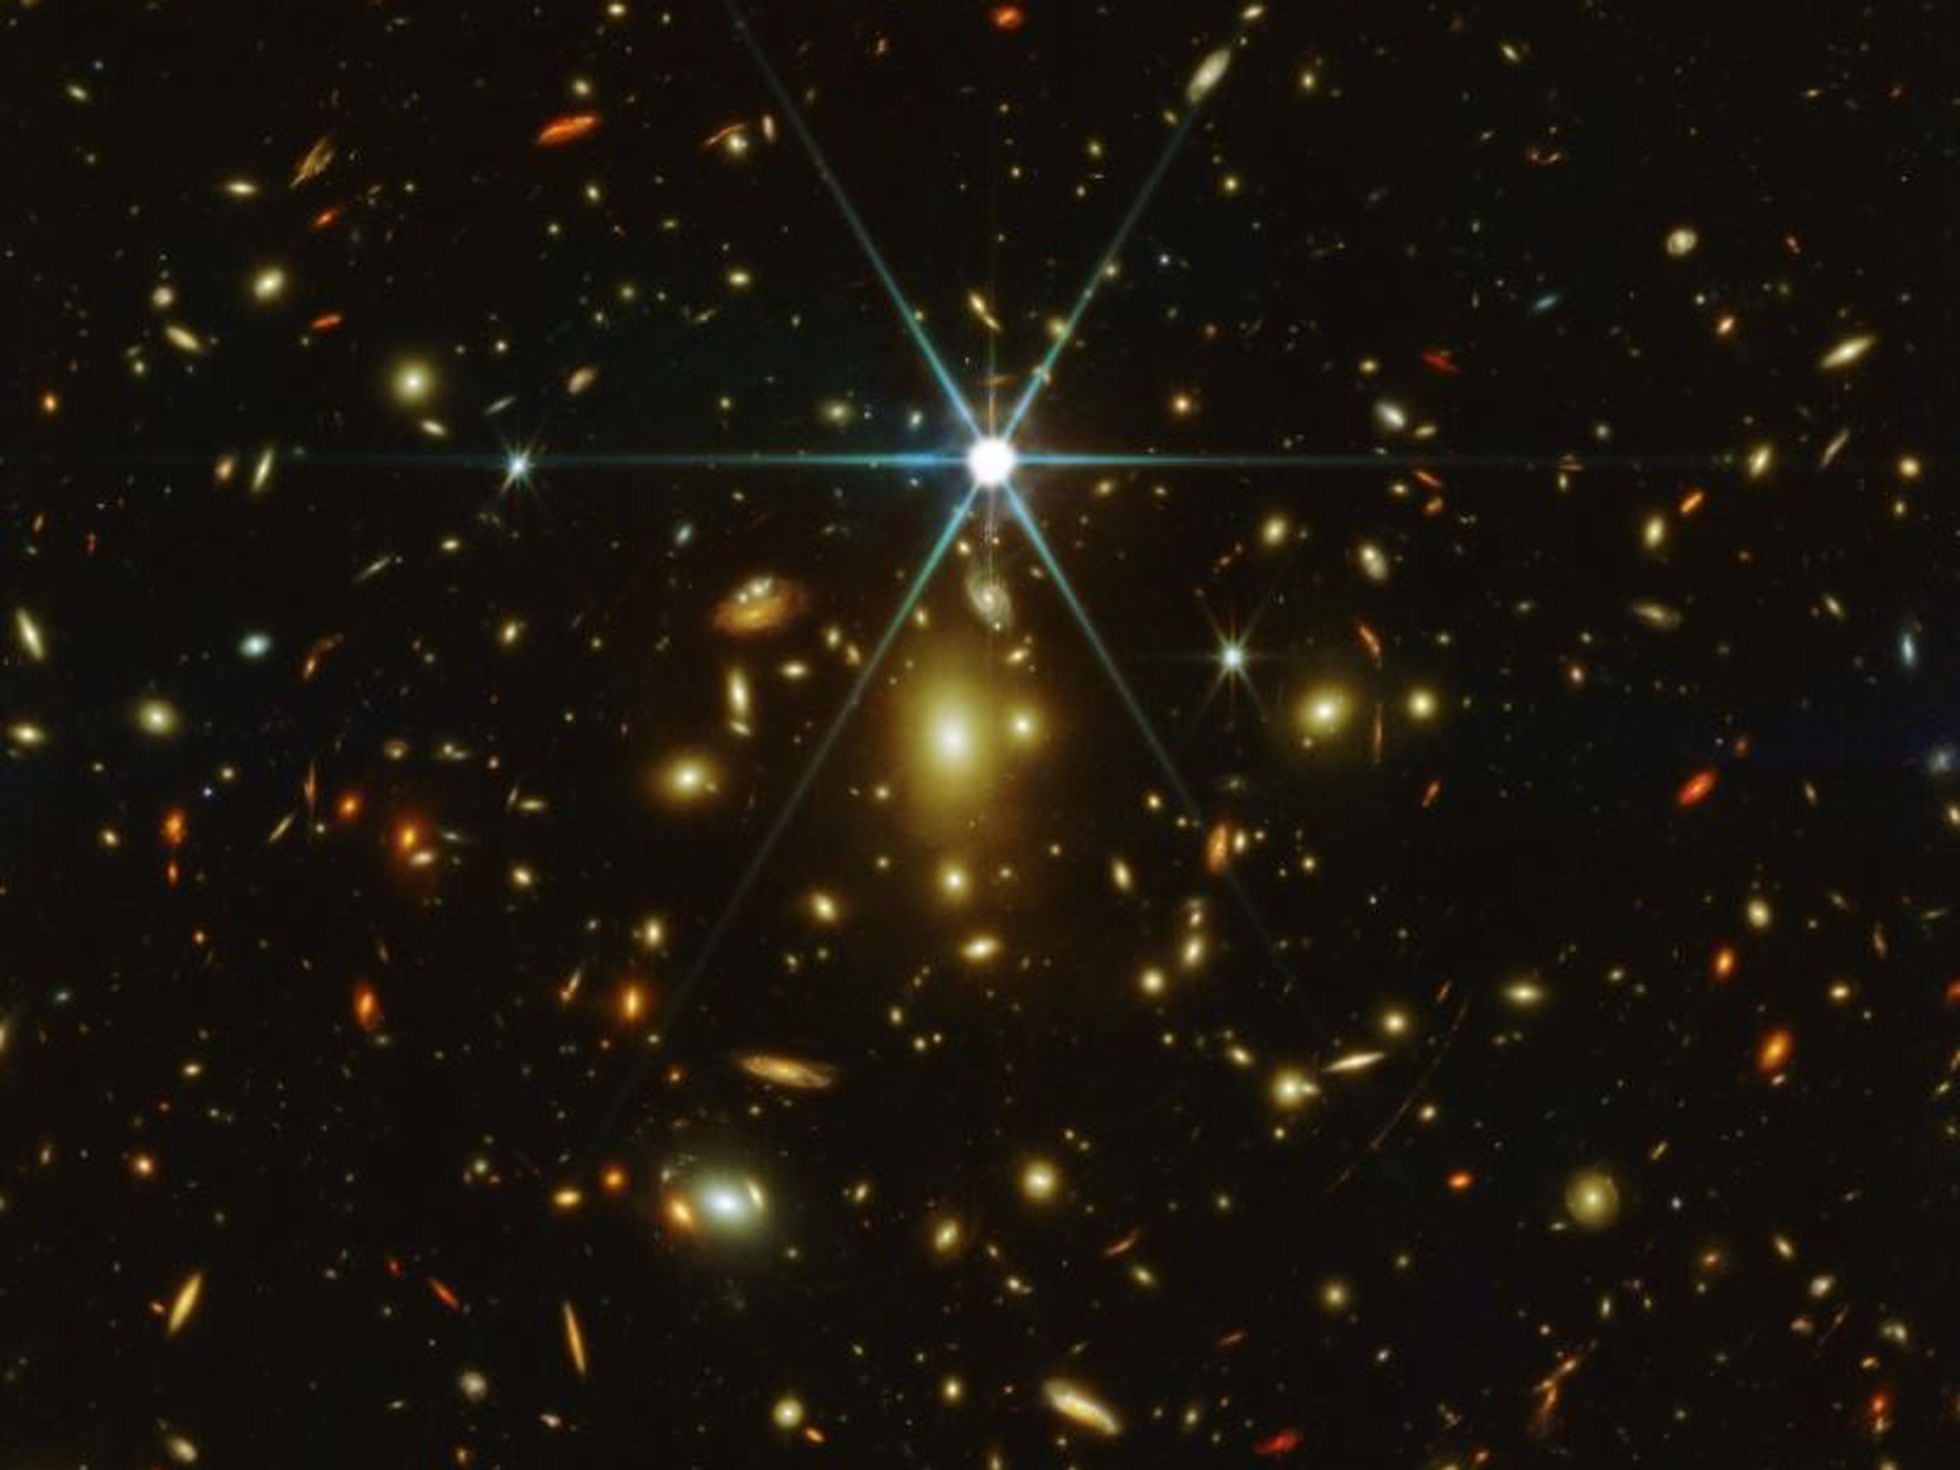 Earendel: Earendel, la estrella conocida más lejana en el universo, es  redescubierta por el 'James Webb' | Ciencia | EL PAÍS